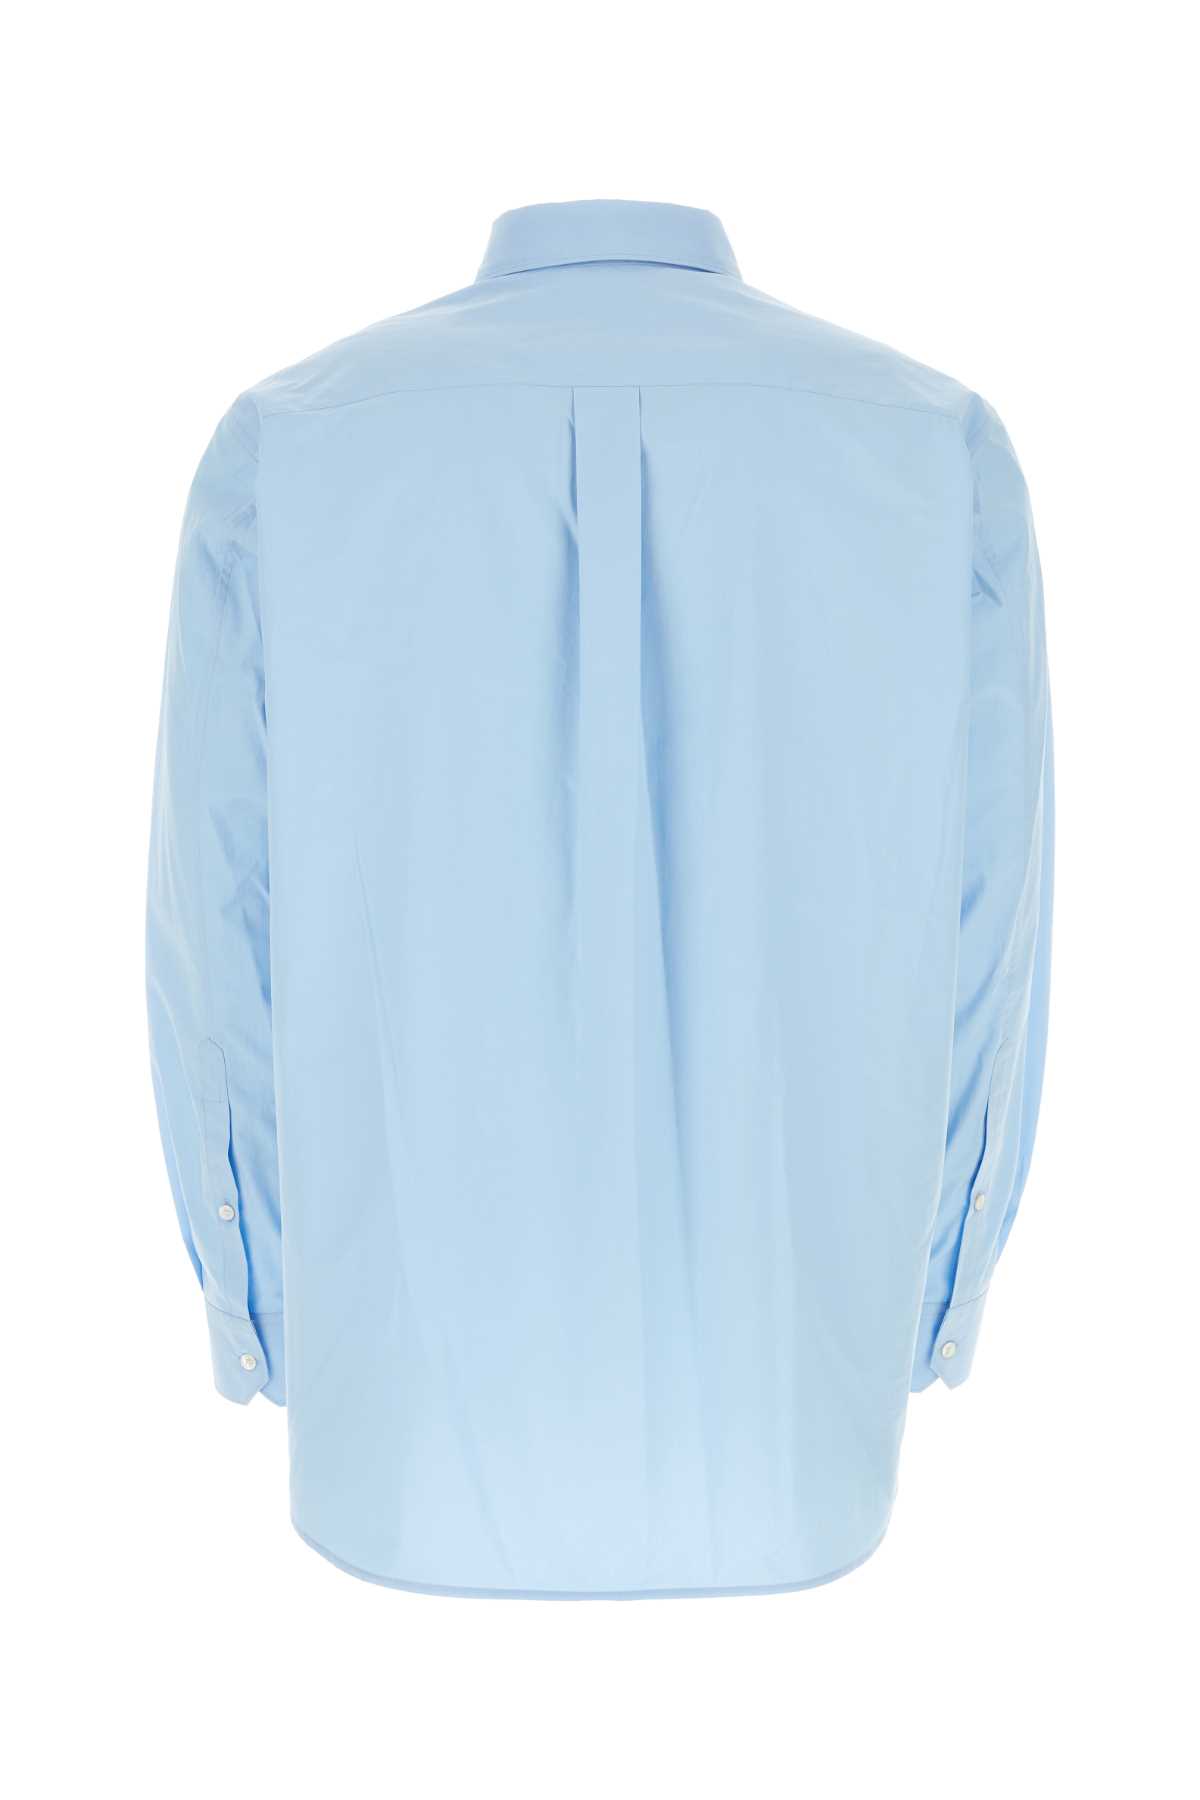 Valentino Light-blue Poplin Shirt